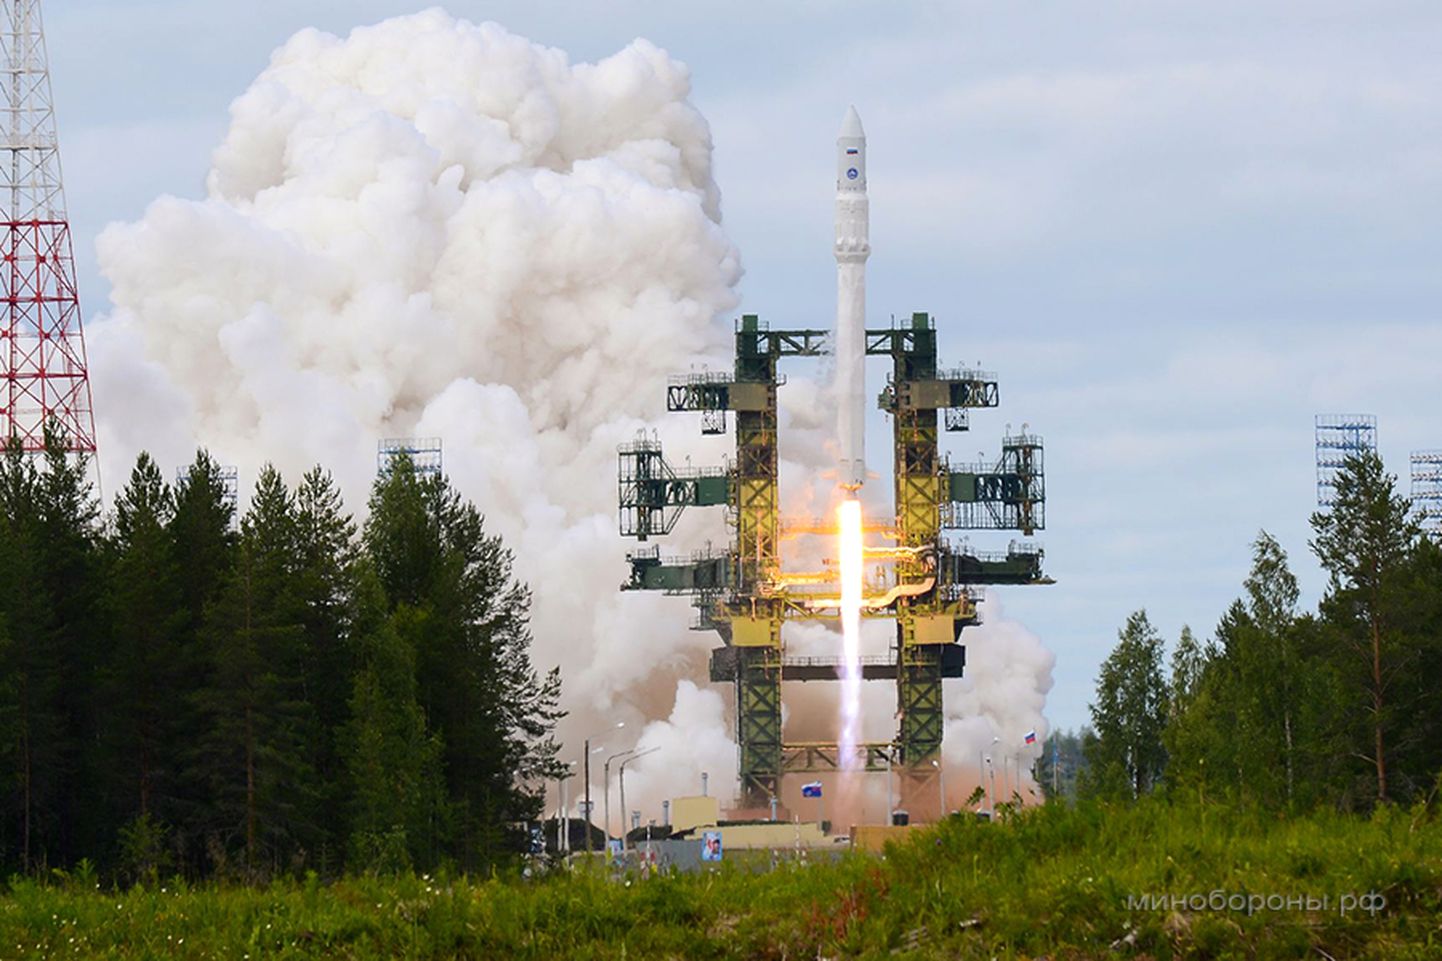 Angara 5 raketi esimene start 2010. aastal, mis toimus Arhangelski oblastis Plessetski kosmodroomilt.